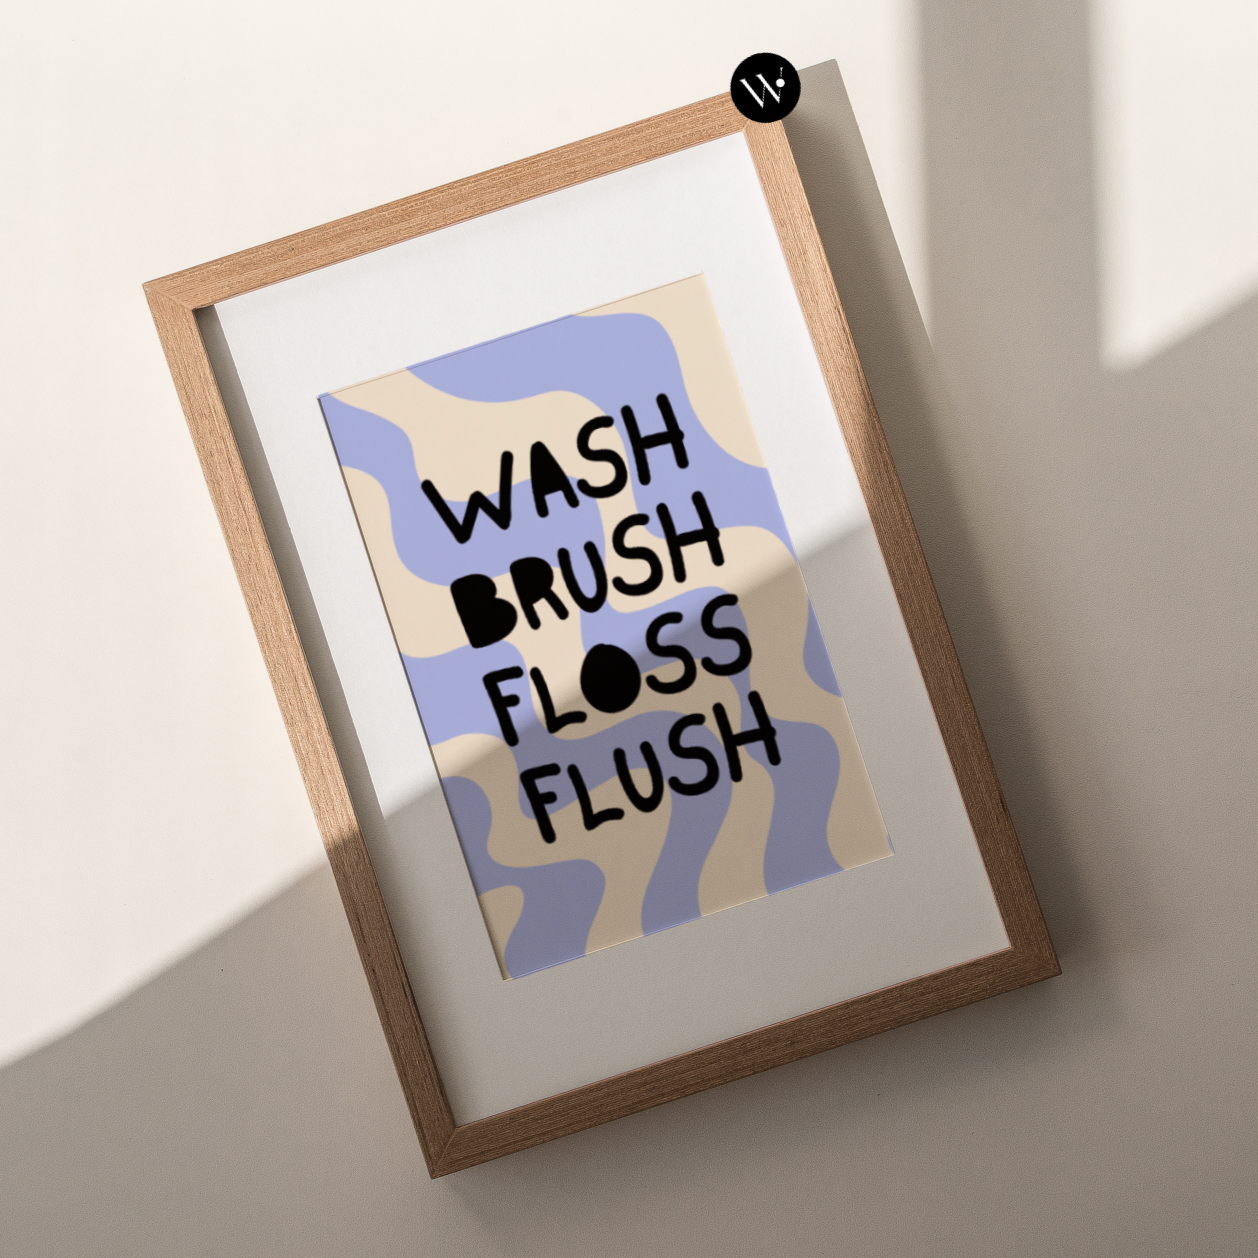 Wash Brush Floss Flush Poster Print